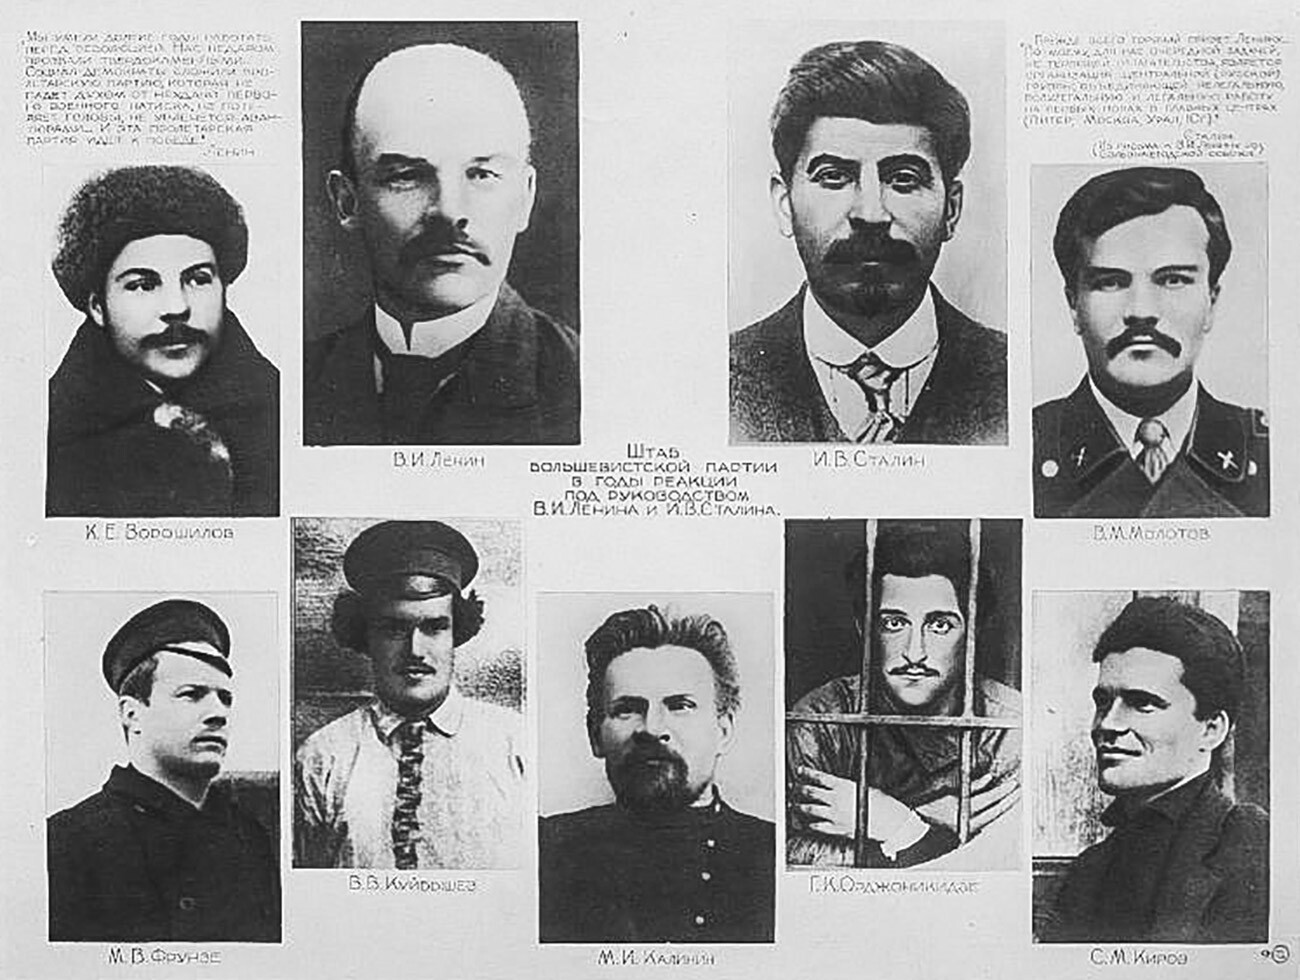 Štab boljševiške partije v letih reakcije pod Vladimirjem Leninom in Josifom Stalinom